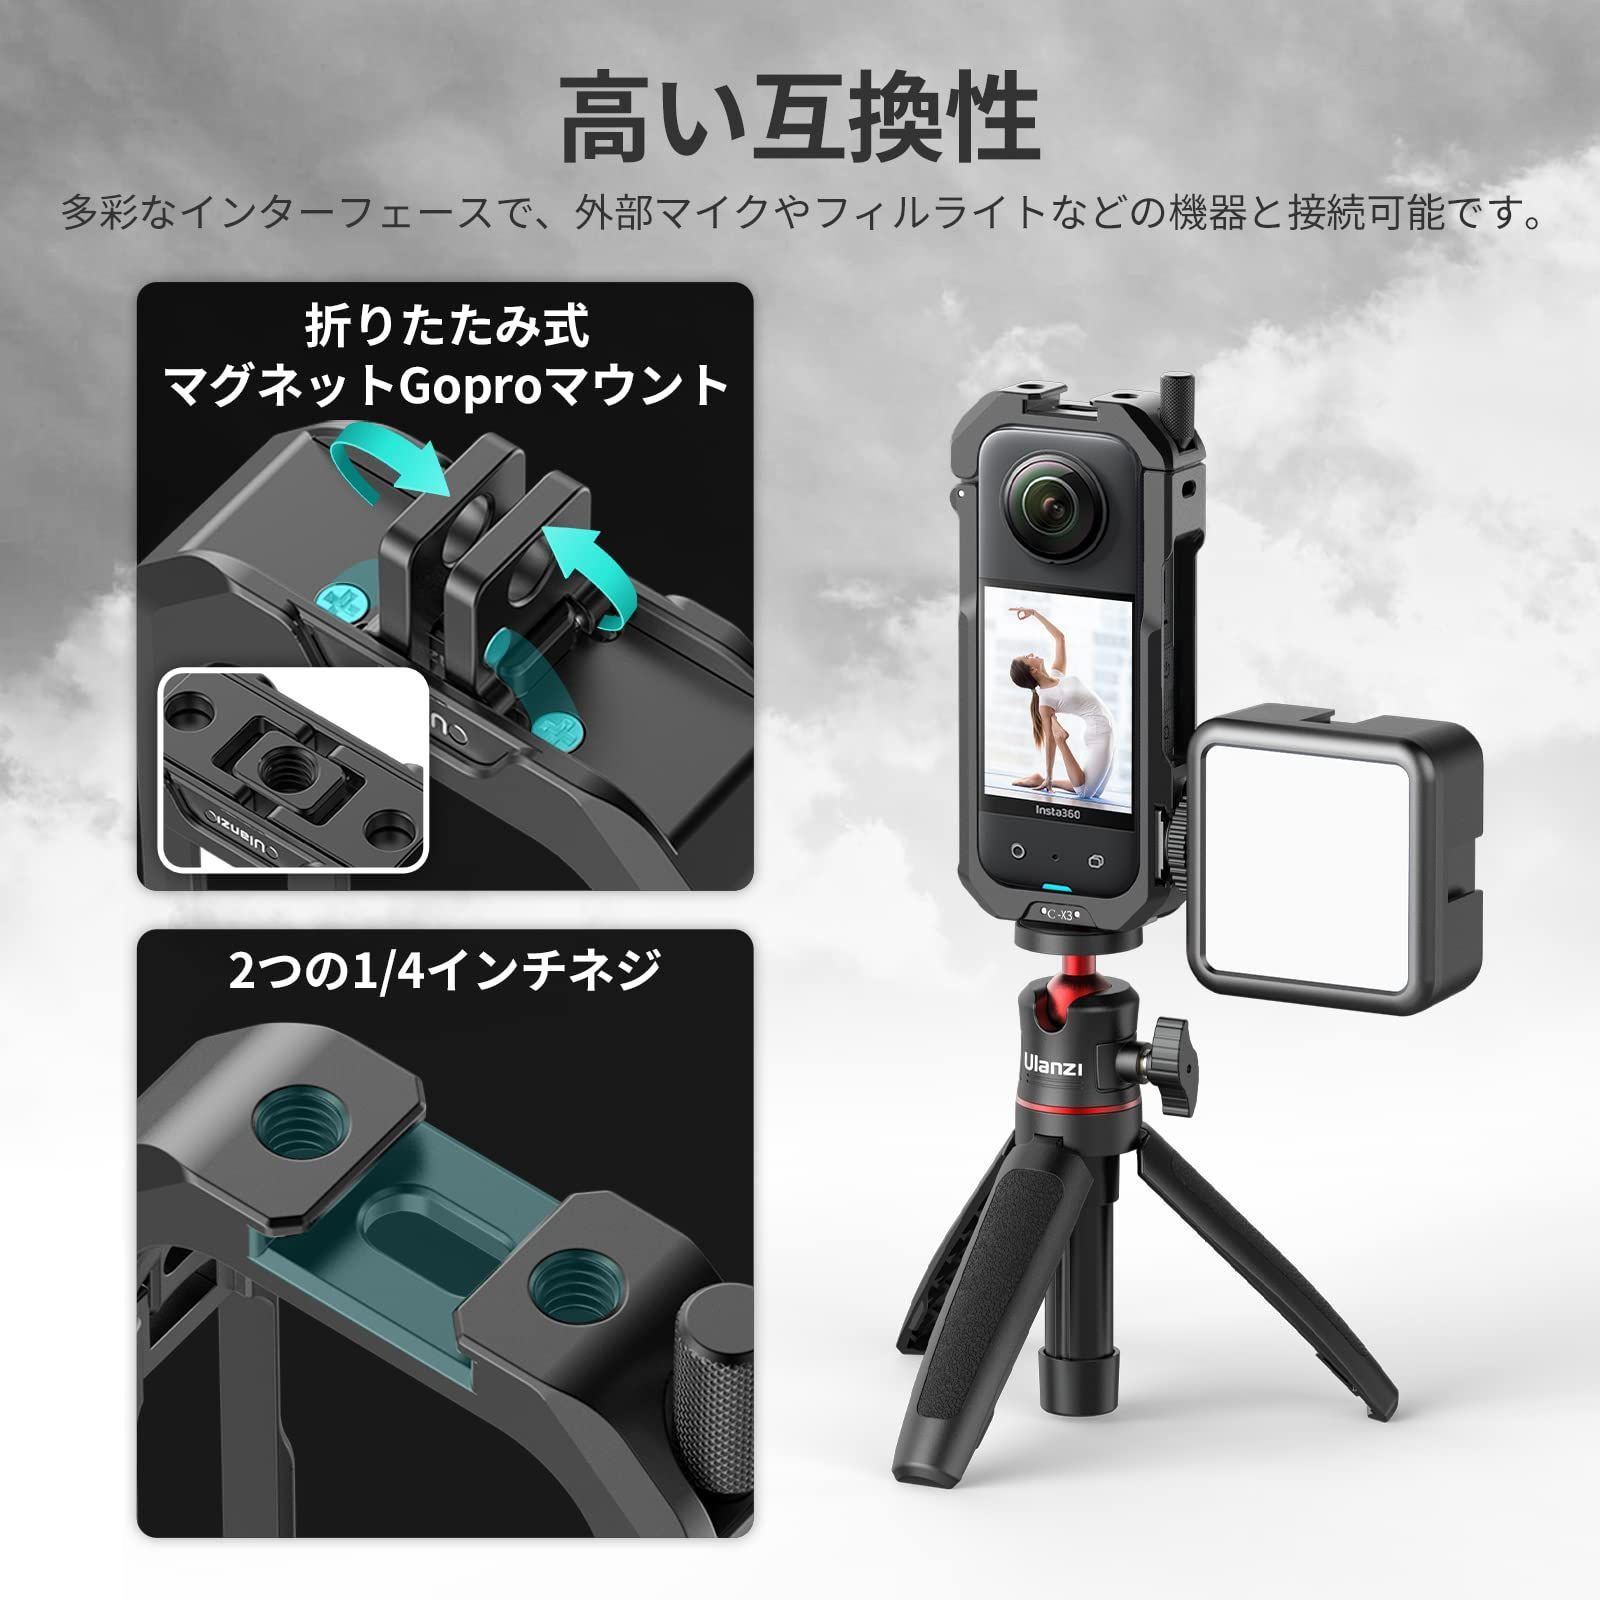 国産日本製GoPro HERO5 SESSION ※ハウジング、マウント付 アクションカメラ・ウェアラブルカメラ